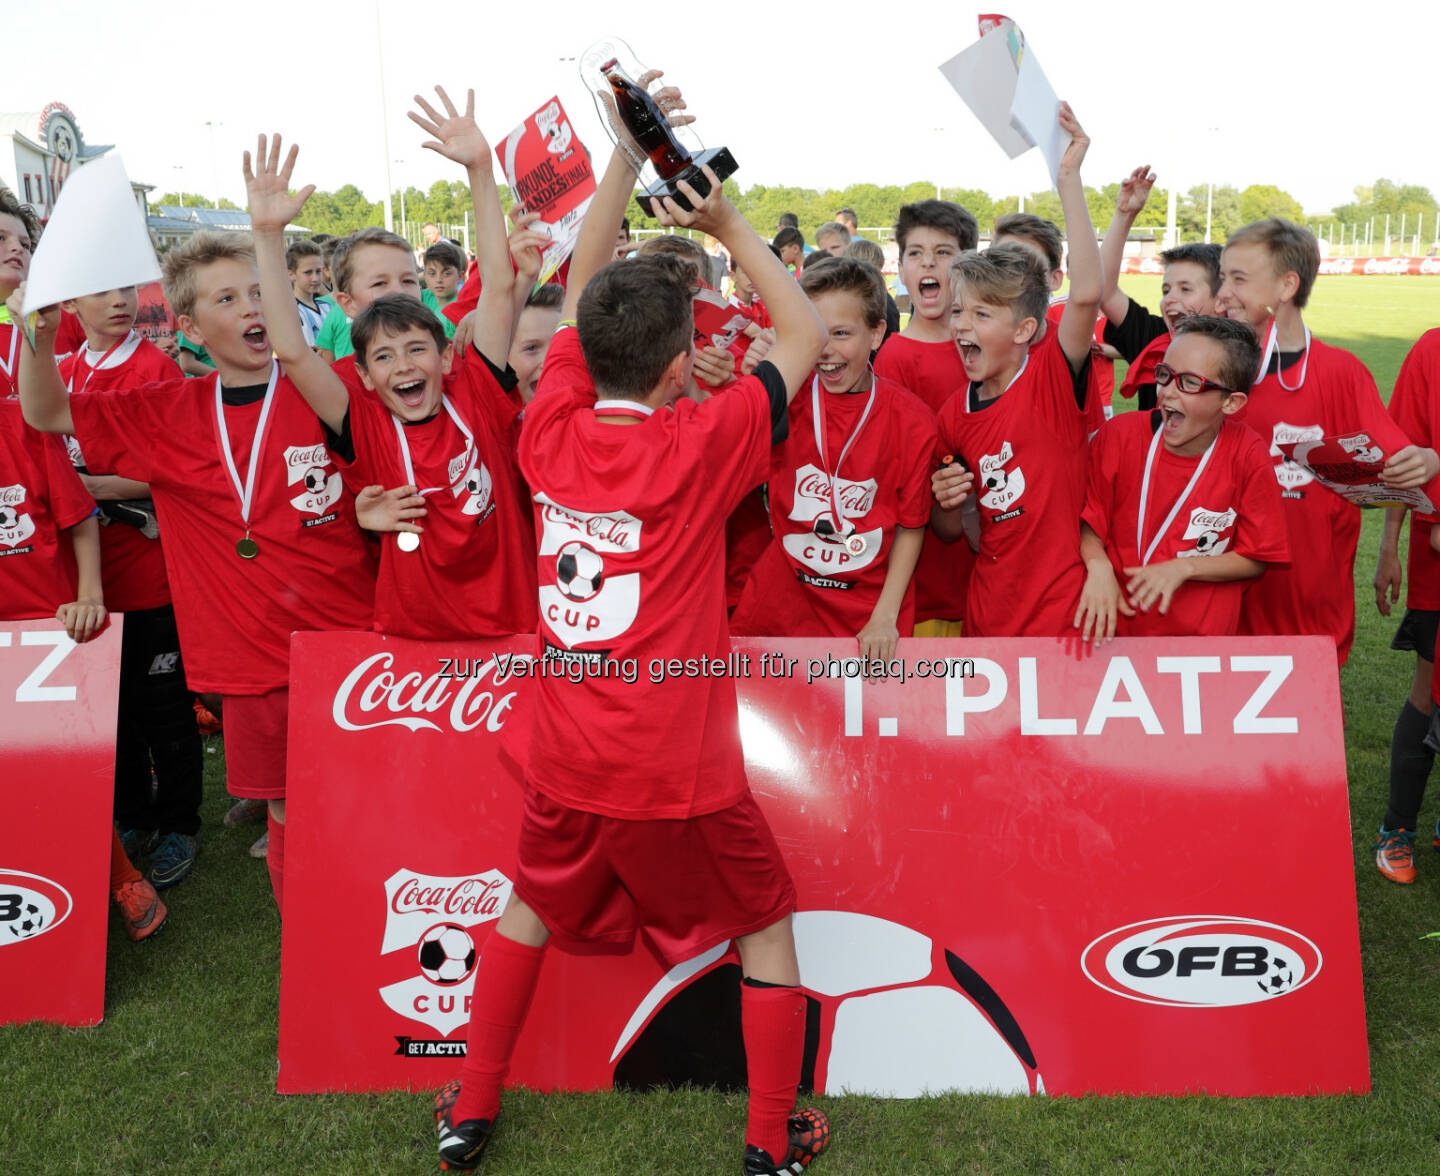 U12 von FC Admira Wacker Mödling gewinnt erneut Coca-Cola CUP in Niederösterreich : Fotocredit Coca-Cola/GEPA